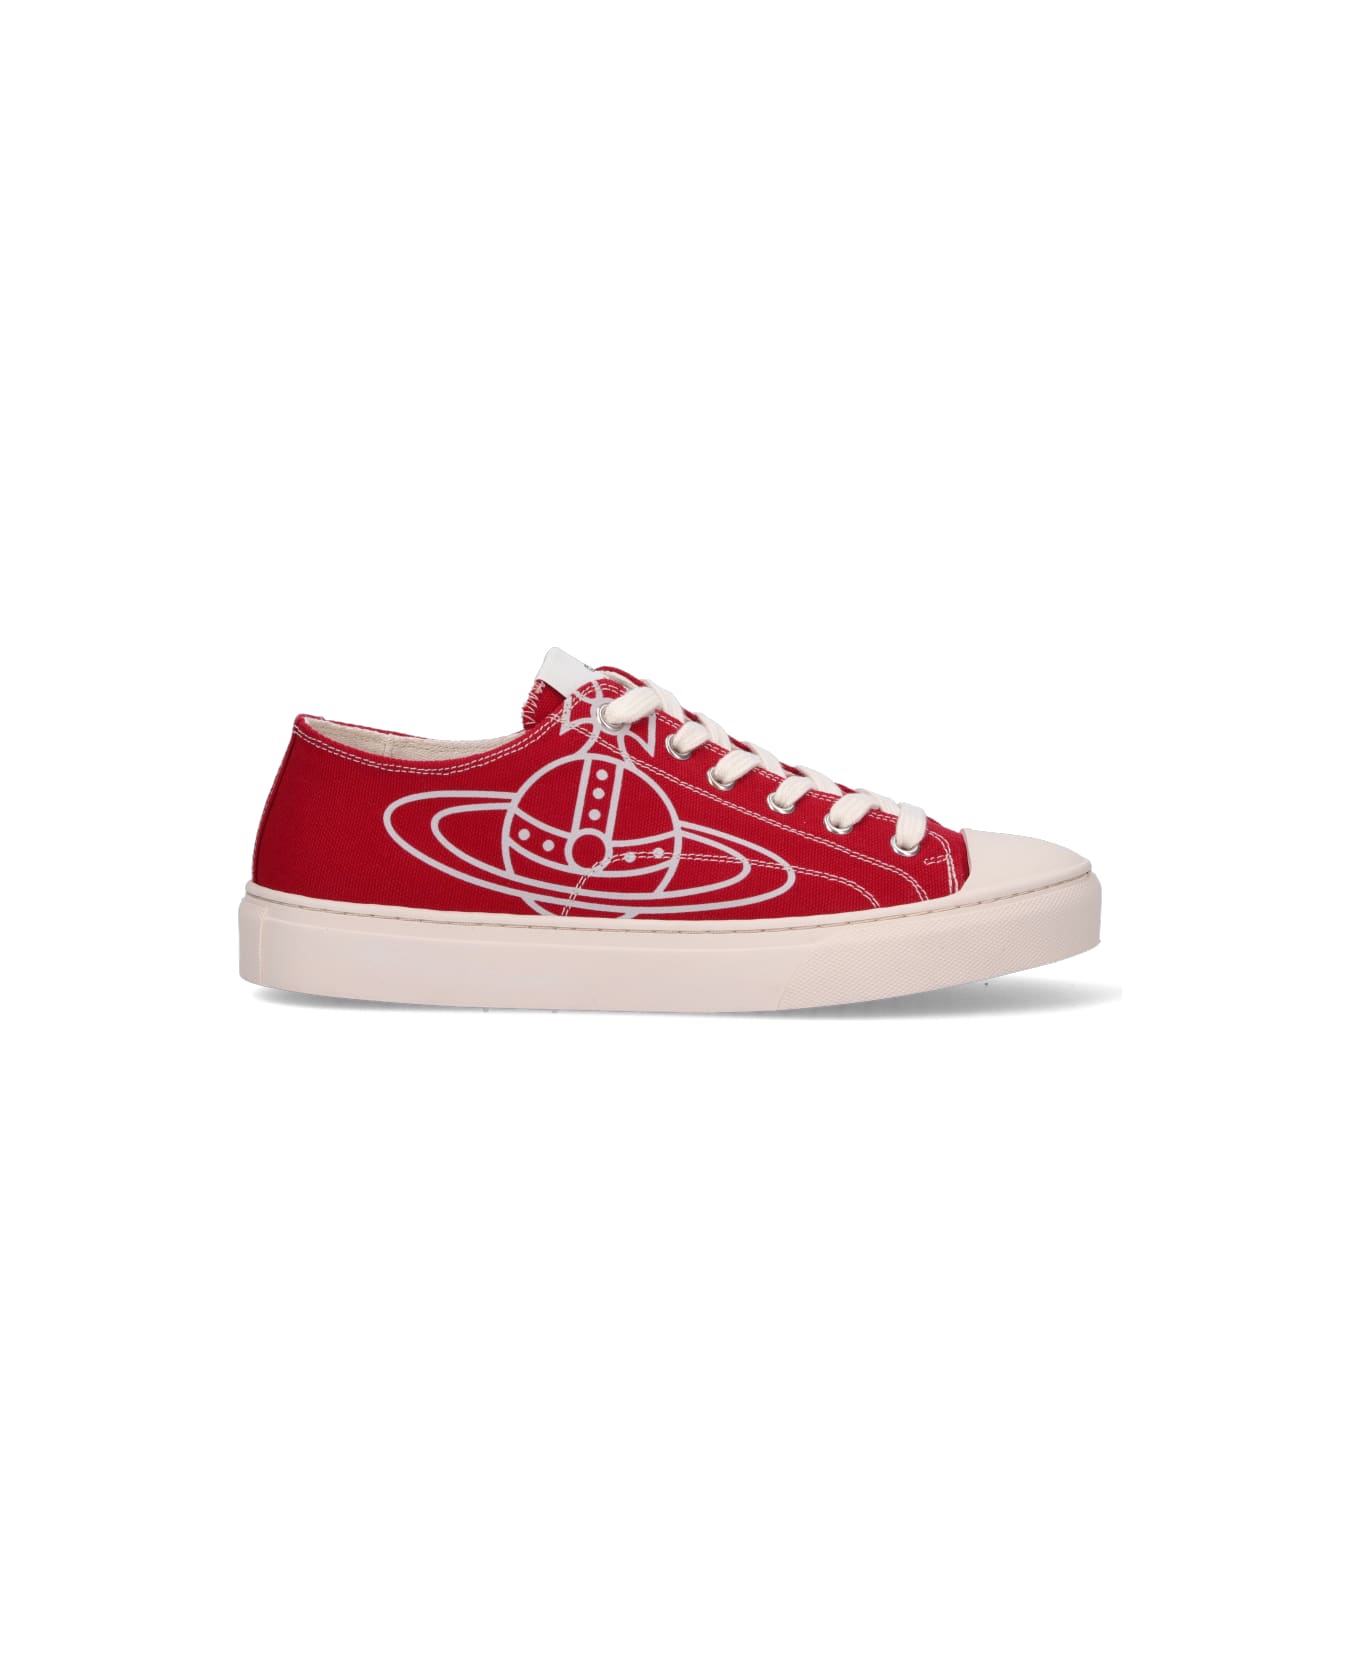 Vivienne Westwood "plimsoll Low Top 2.0" Sneakers - Red